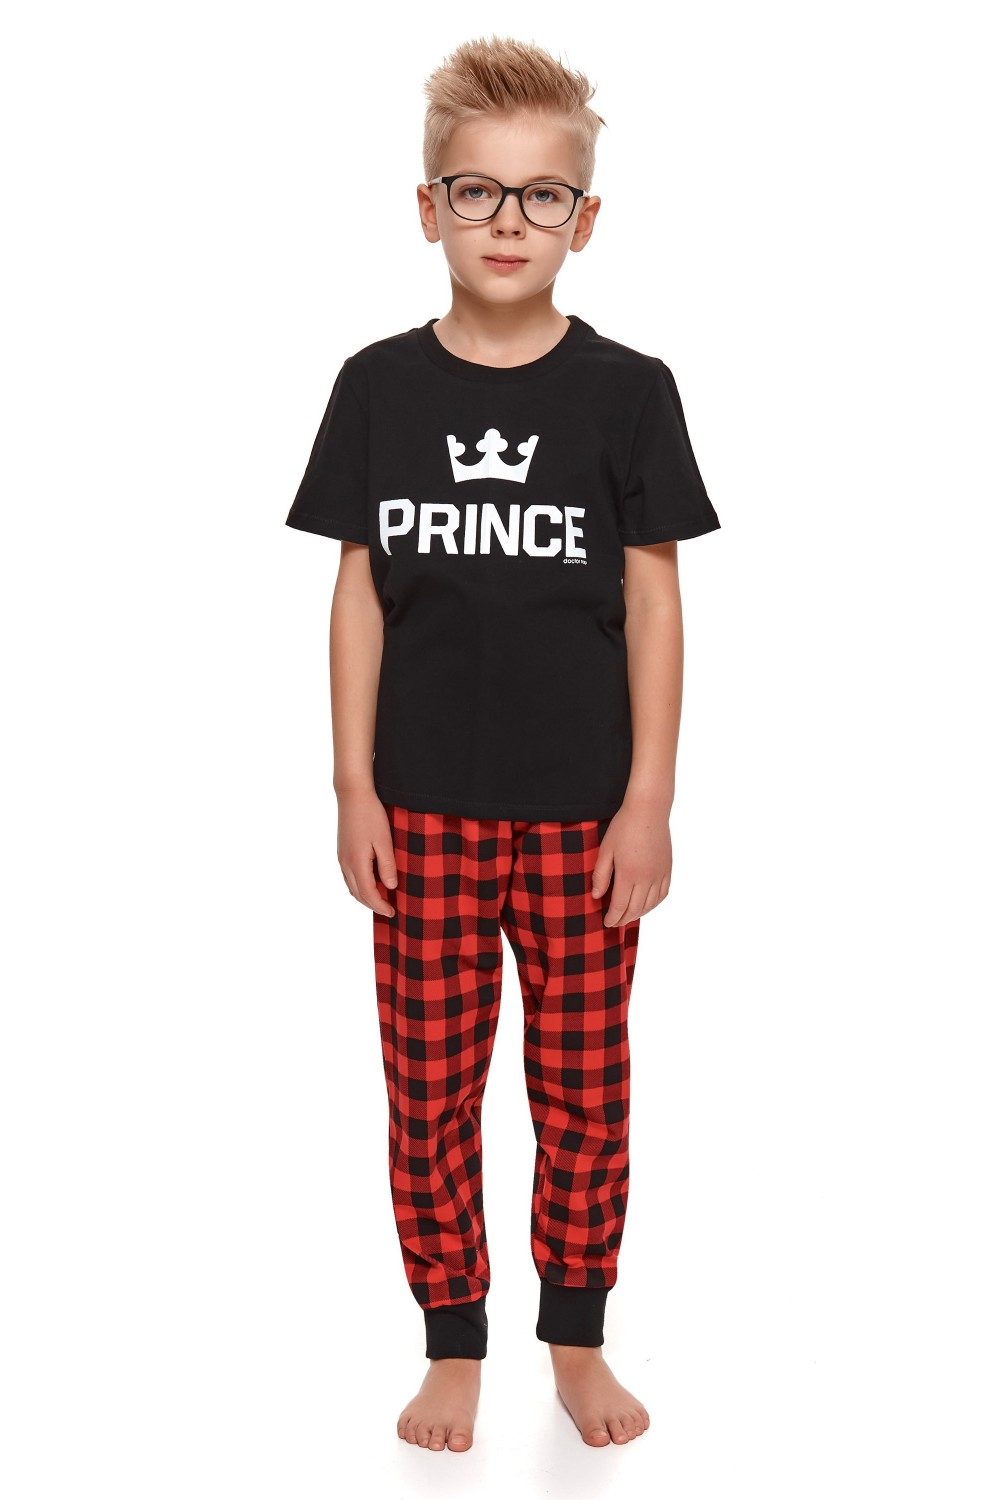 Chlapčenské pyžamo Doctor nap 4271 Prince - čierna